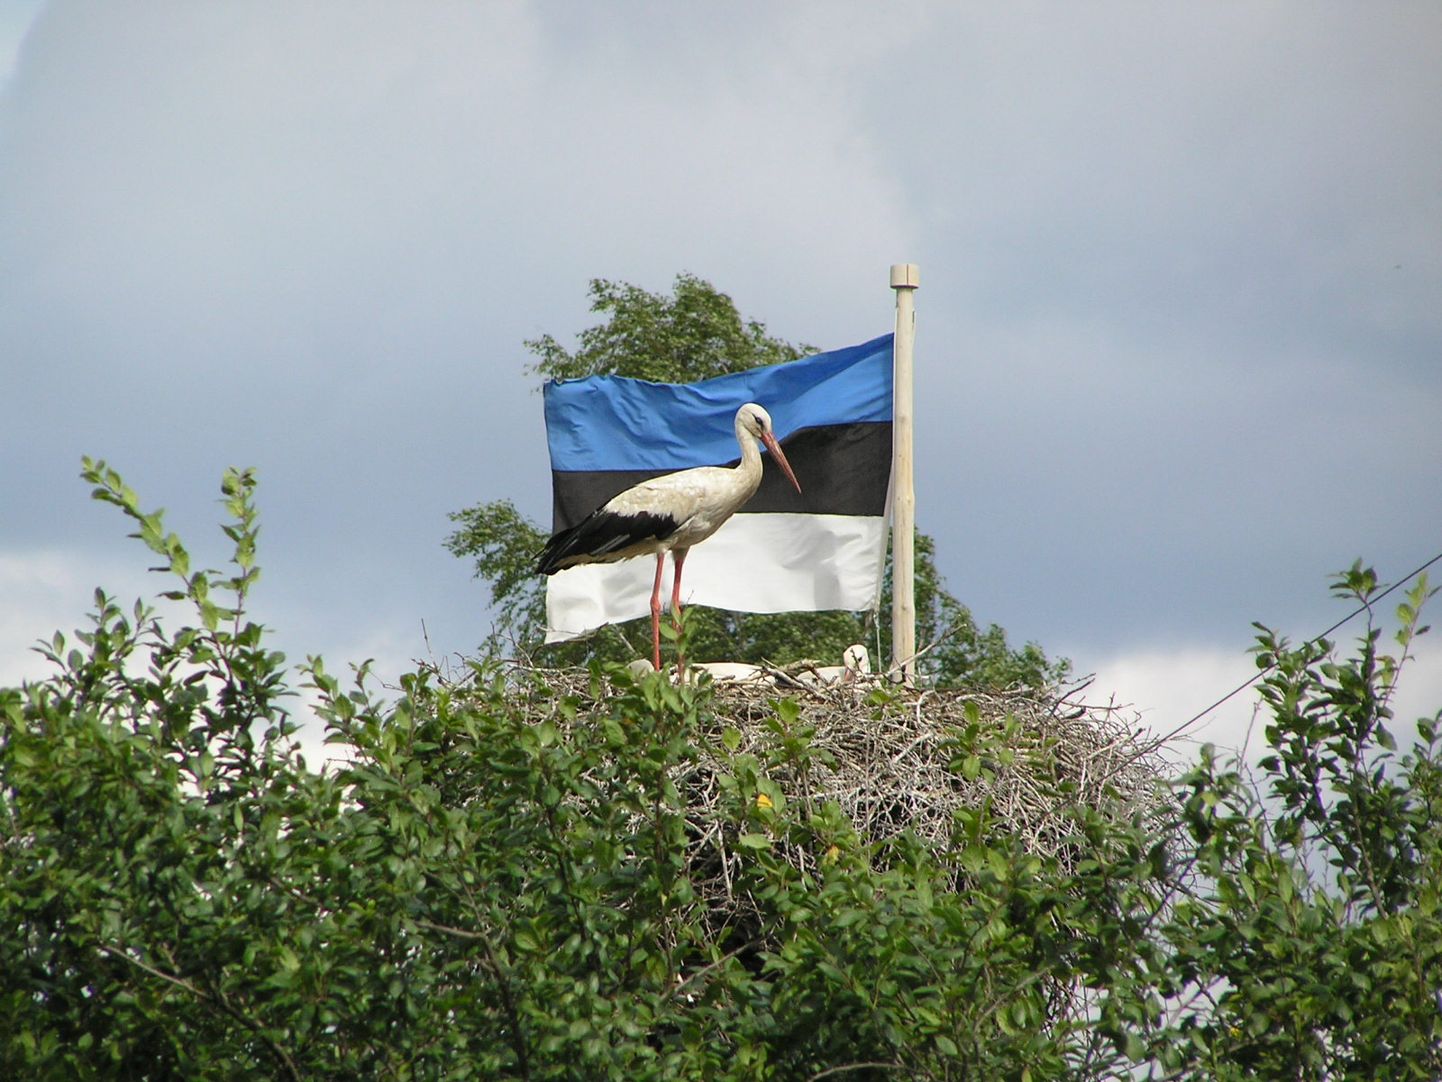 Otepää Kultuurikeskused ja Otepää Vallavalitsus kutsusid kõiki üles saatma sinimustvalgeid fotosid Eesti lipu 136. aastapäeva tähistamiseks. Fotonäituse rahvahääletus kestis kuni 22.juunini. Selle tulemusel sai 192 häält Õnneke Hermaste foto toonekurest Eesti lipu taustal.